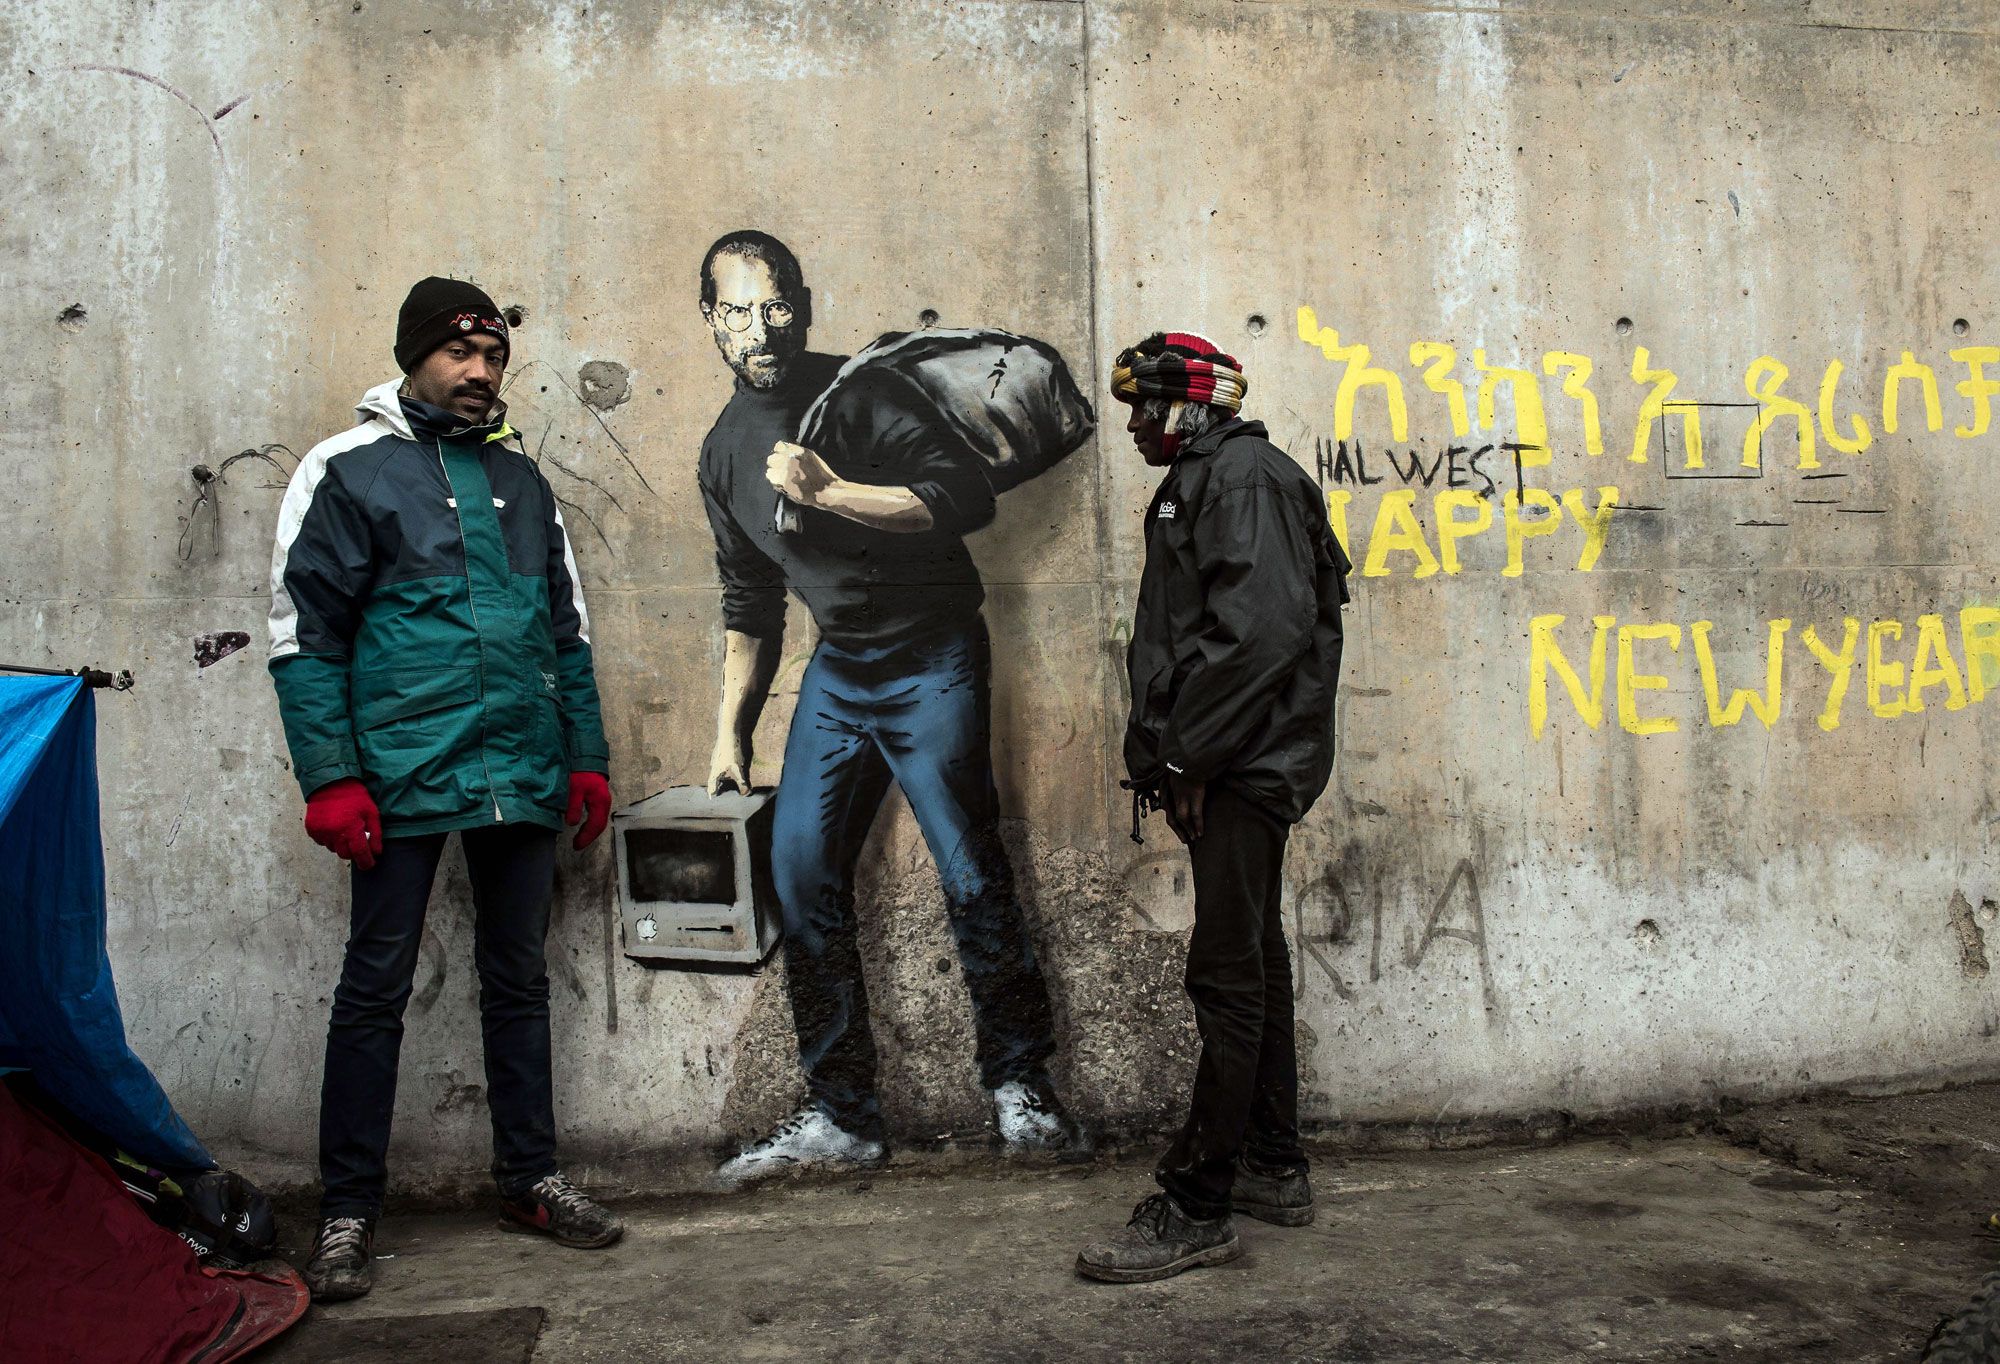 ستيف جونز المهاجر واللاجئ الكوني على حائط مخيم عشوائي في كاليه-فرنسا بريشة فنان الغرافيتي الشهير بانكسي